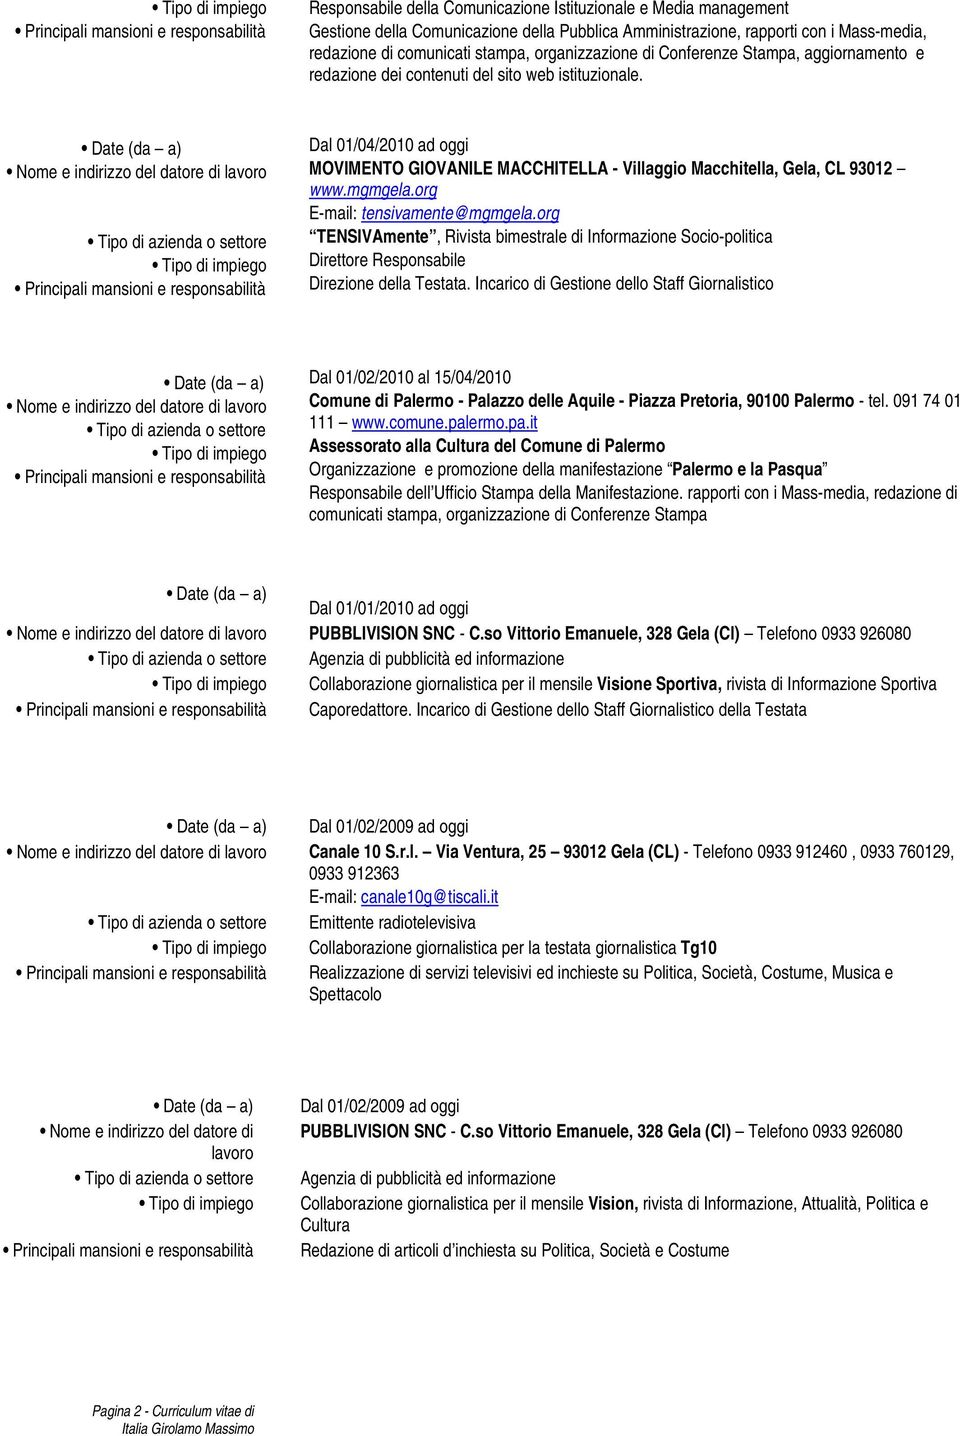 Dal 01/04/2010 ad oggi MOVIMENTO GIOVANILE MACCHITELLA - Villaggio Macchitella, Gela, CL 93012 www.mgmgela.org E-mail: tensivamente@mgmgela.